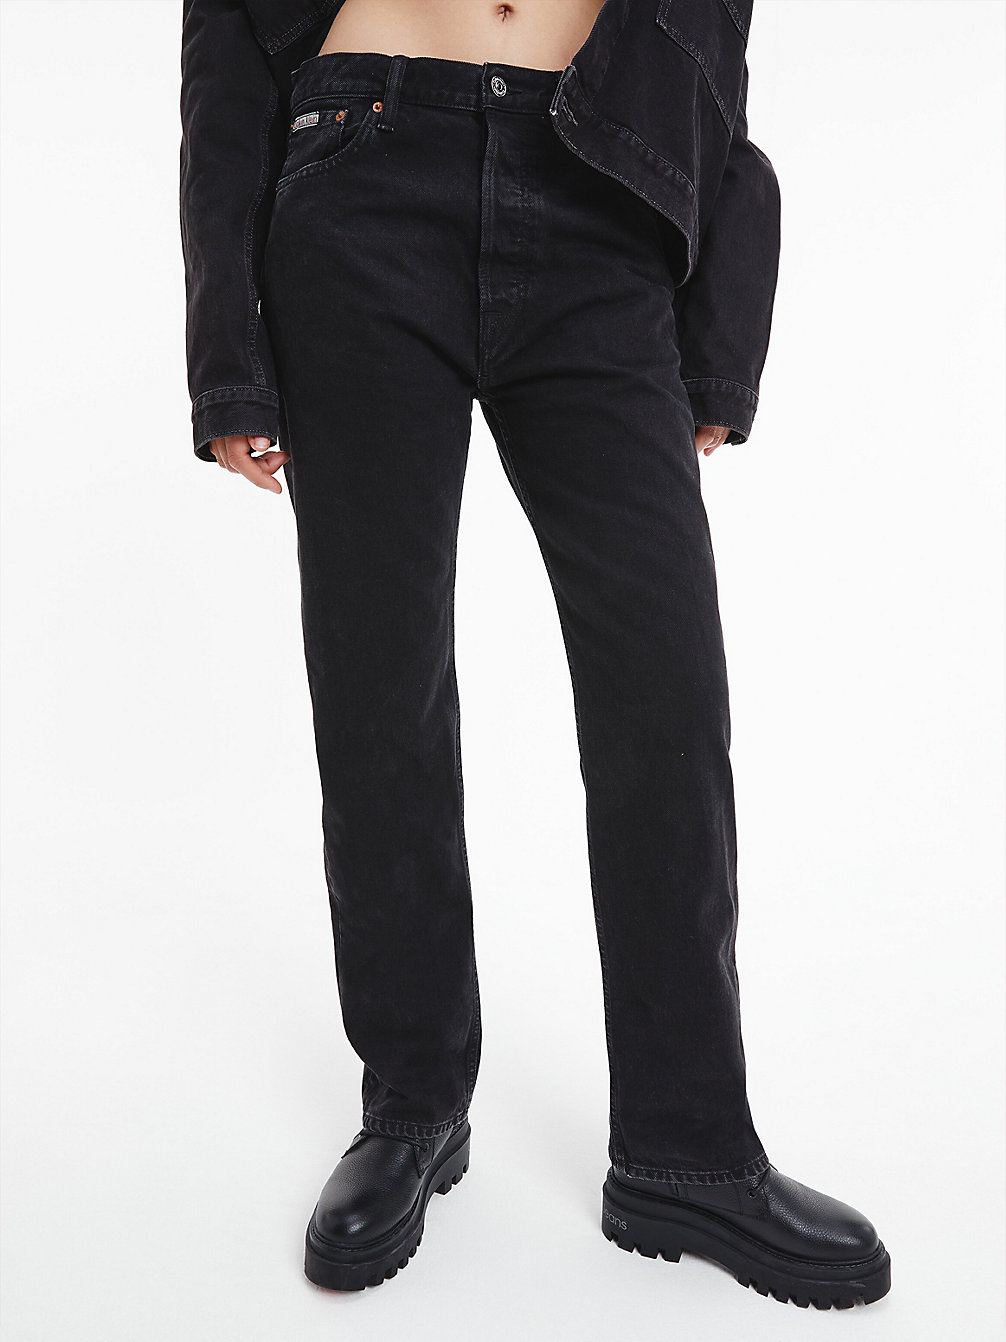 Unisex Straight Jeans – CK Standards > DENIM BLACK > undefined unisex > Calvin Klein